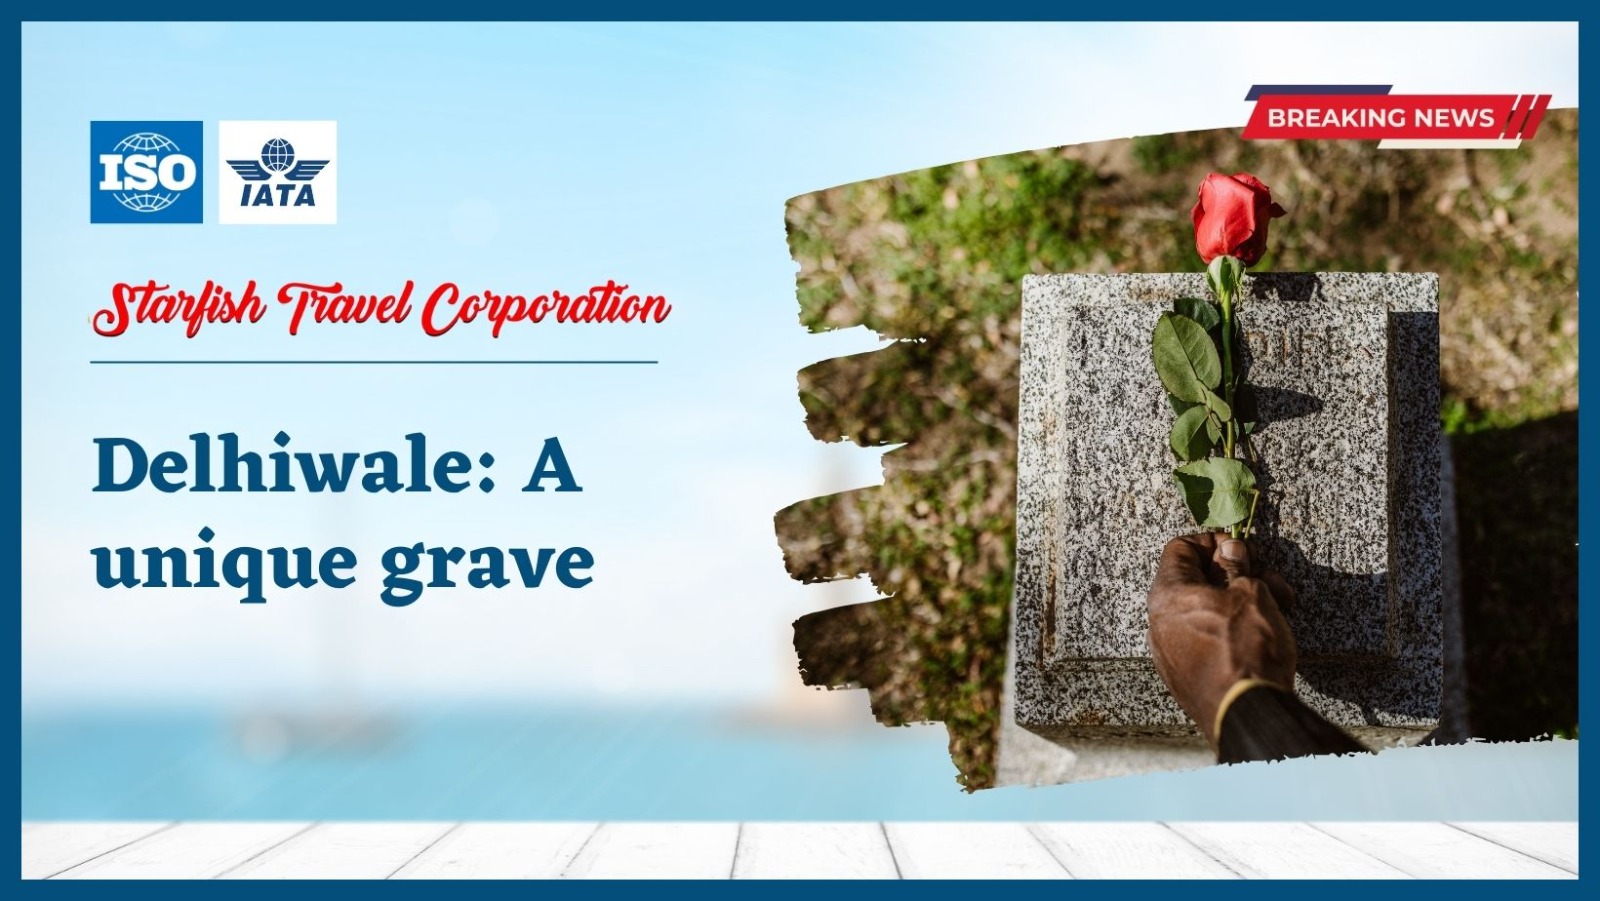 Delhiwale: A unique grave